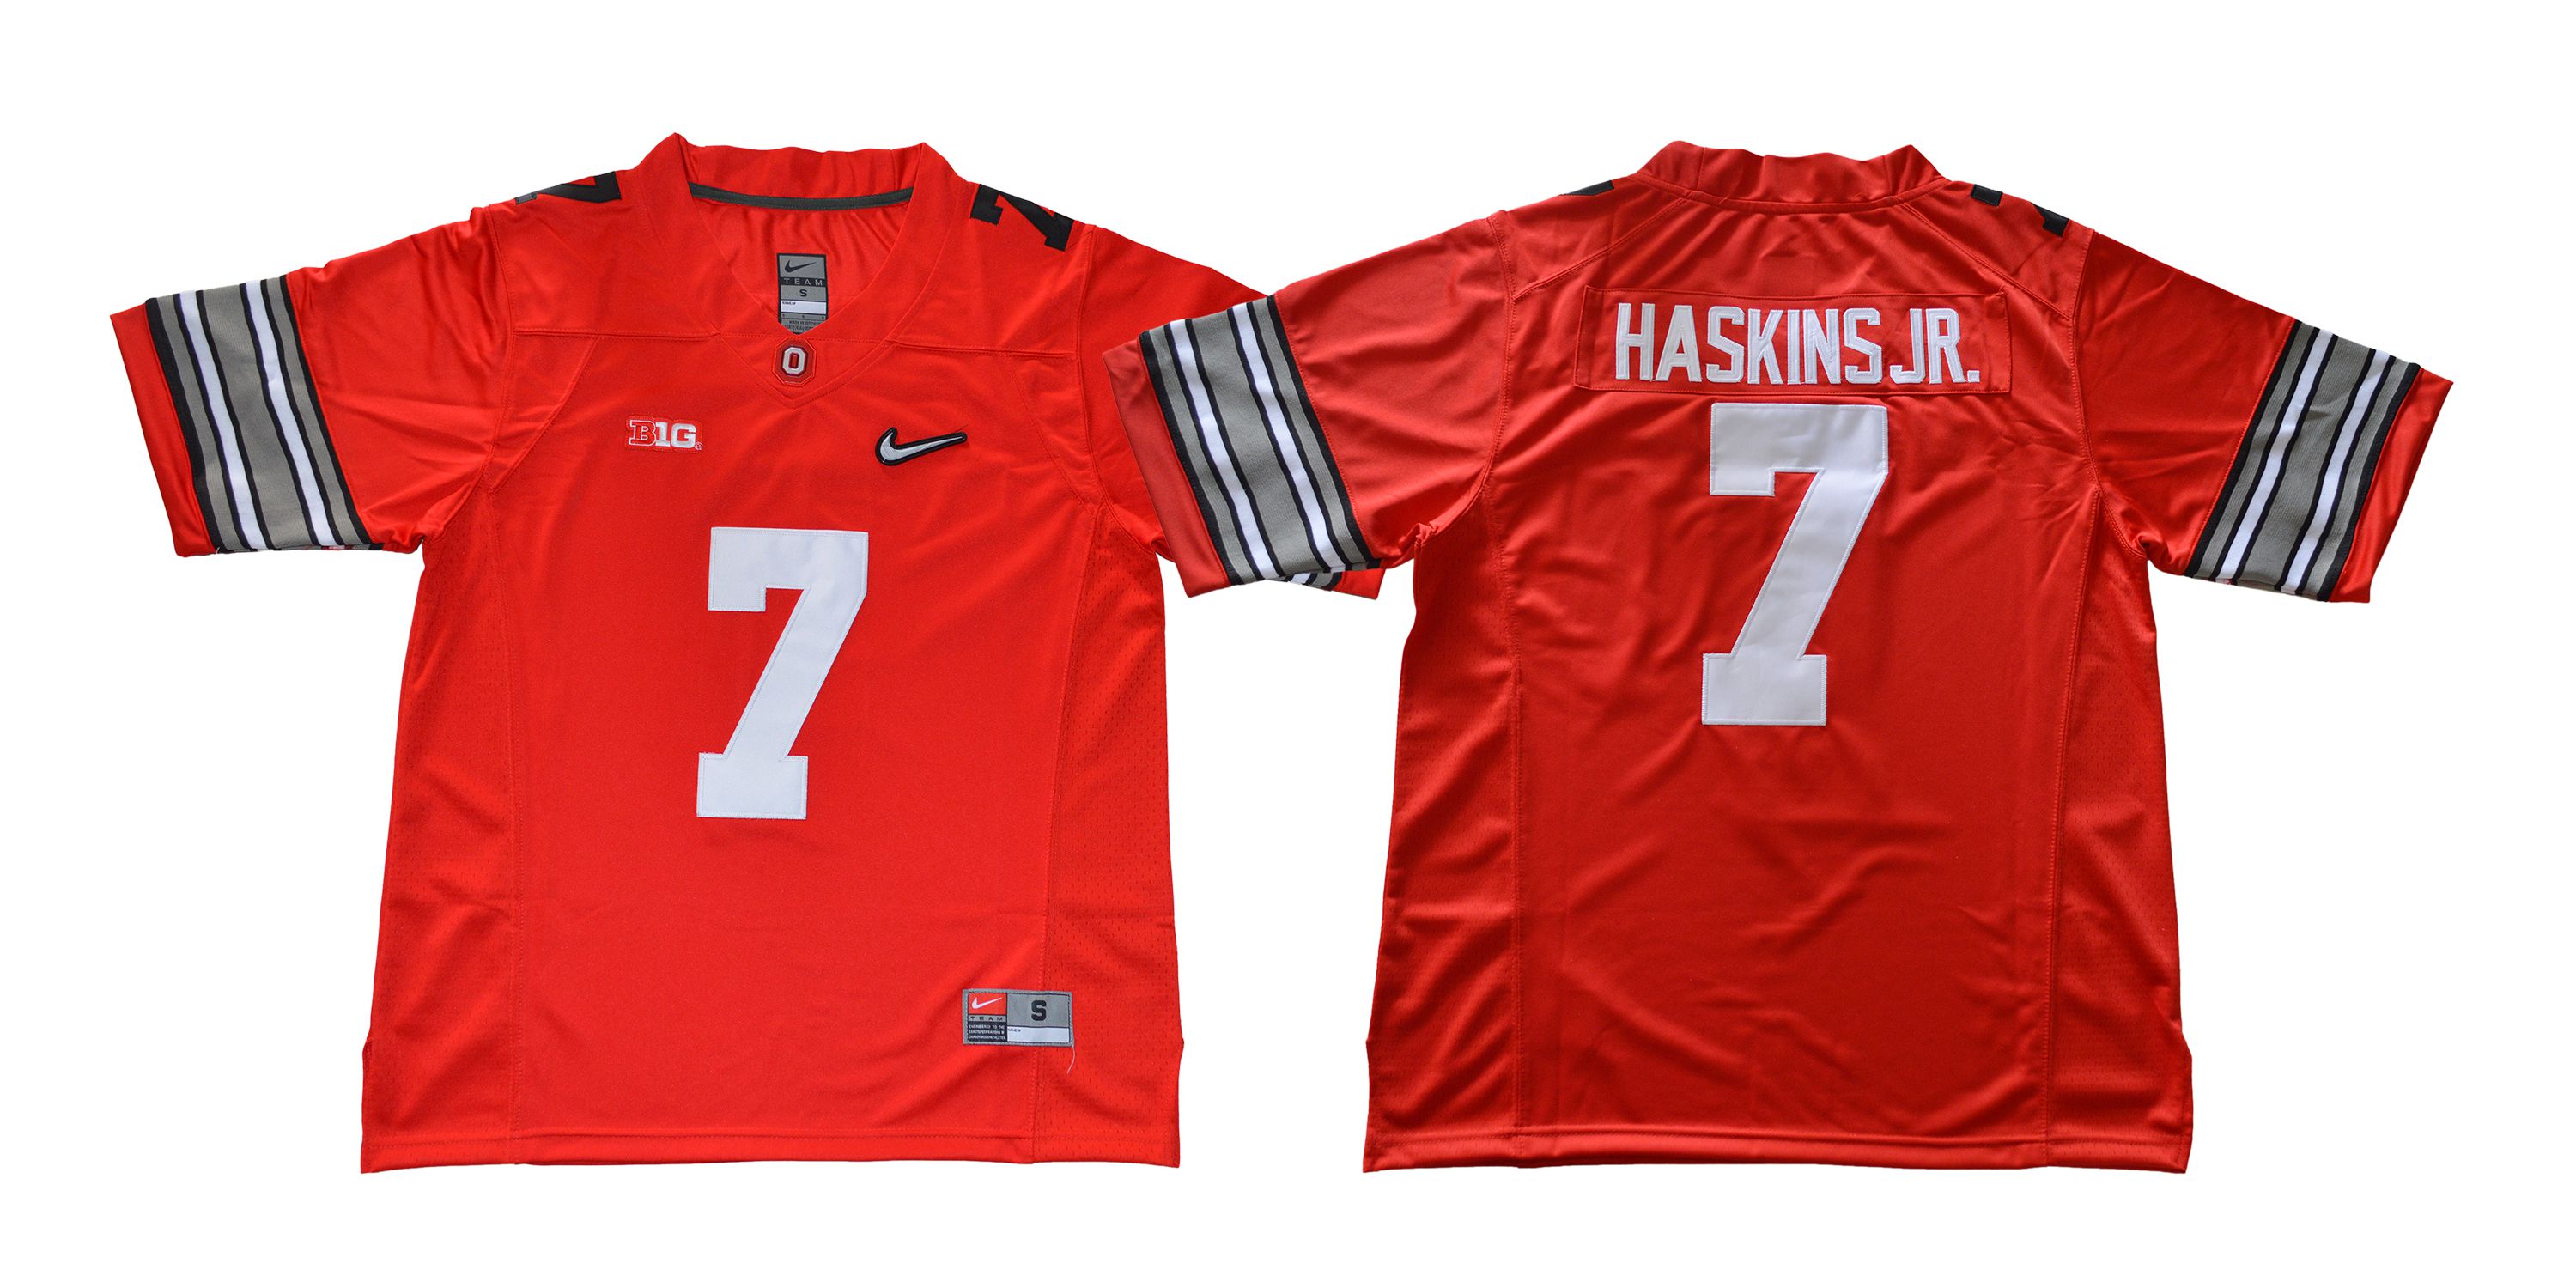 Men Ohio State Buckeyes #7 Haskins jr Diamond Red Nike NCAA Jerseys->ncaa teams->NCAA Jersey